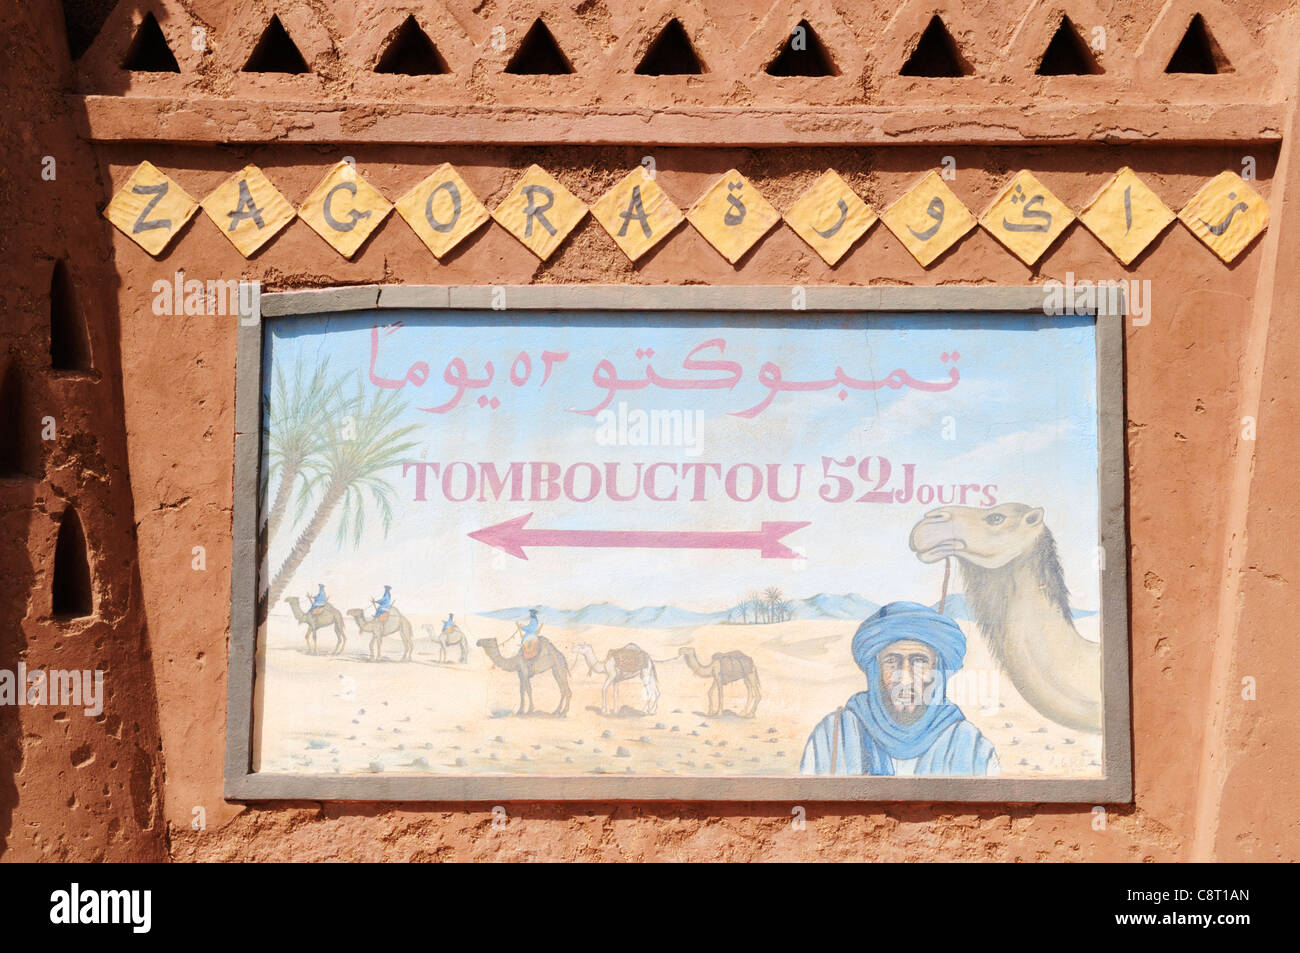 Tombouctou 52 Jours segno, Zagora, Valle di Draa Regione, Marocco Foto Stock